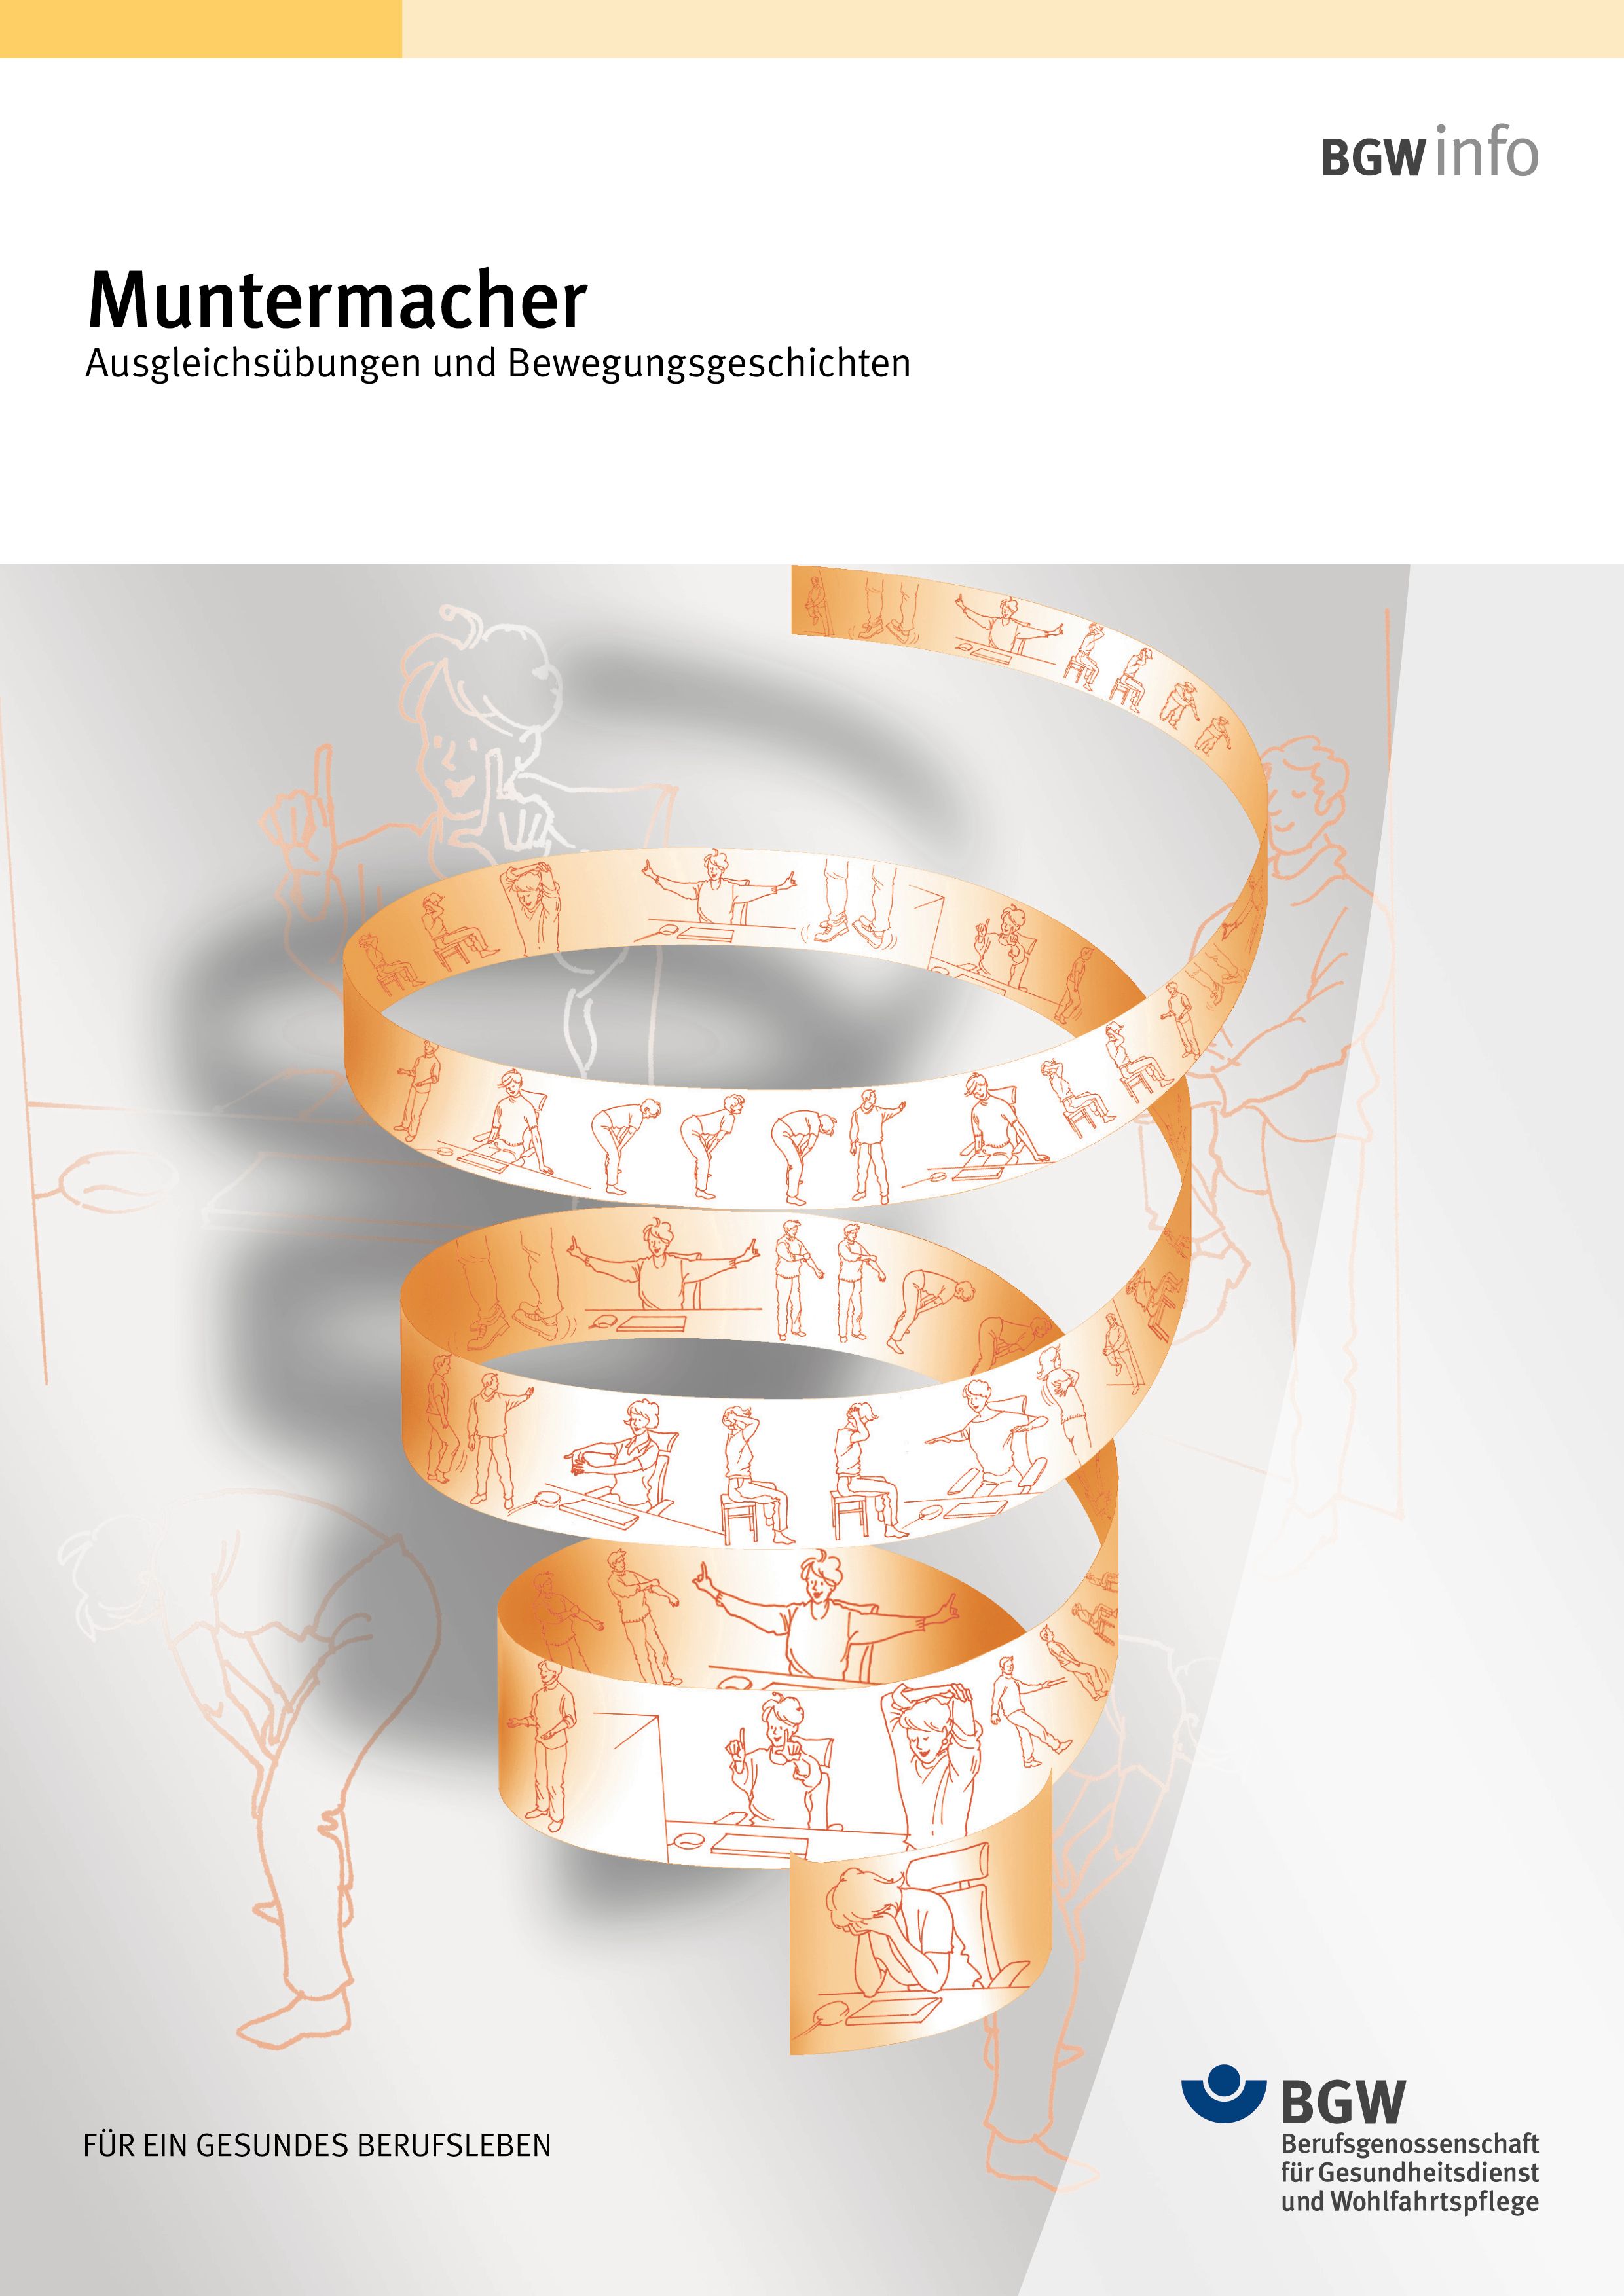 Titel: Muntermacher - Ausgleichsübungen und Bewegungsgeschichten - Papierspirale mit Illustrationen von Personen, die gymnastische Übungen machen